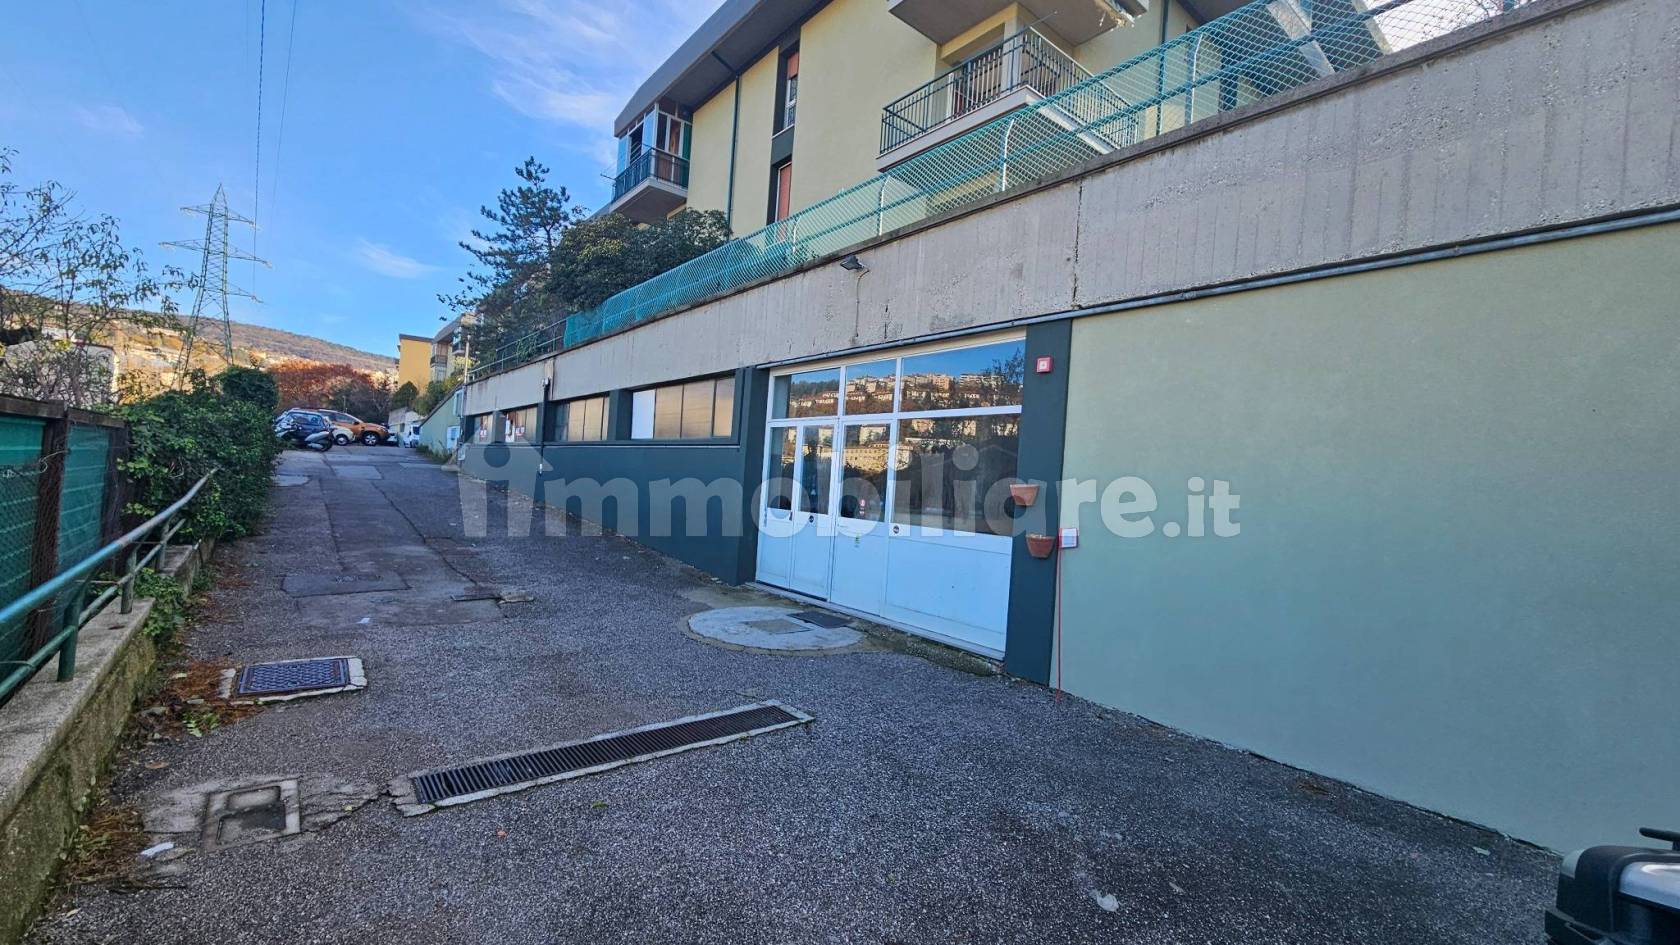 Magazzini in vendita Trieste - Immobiliare.it